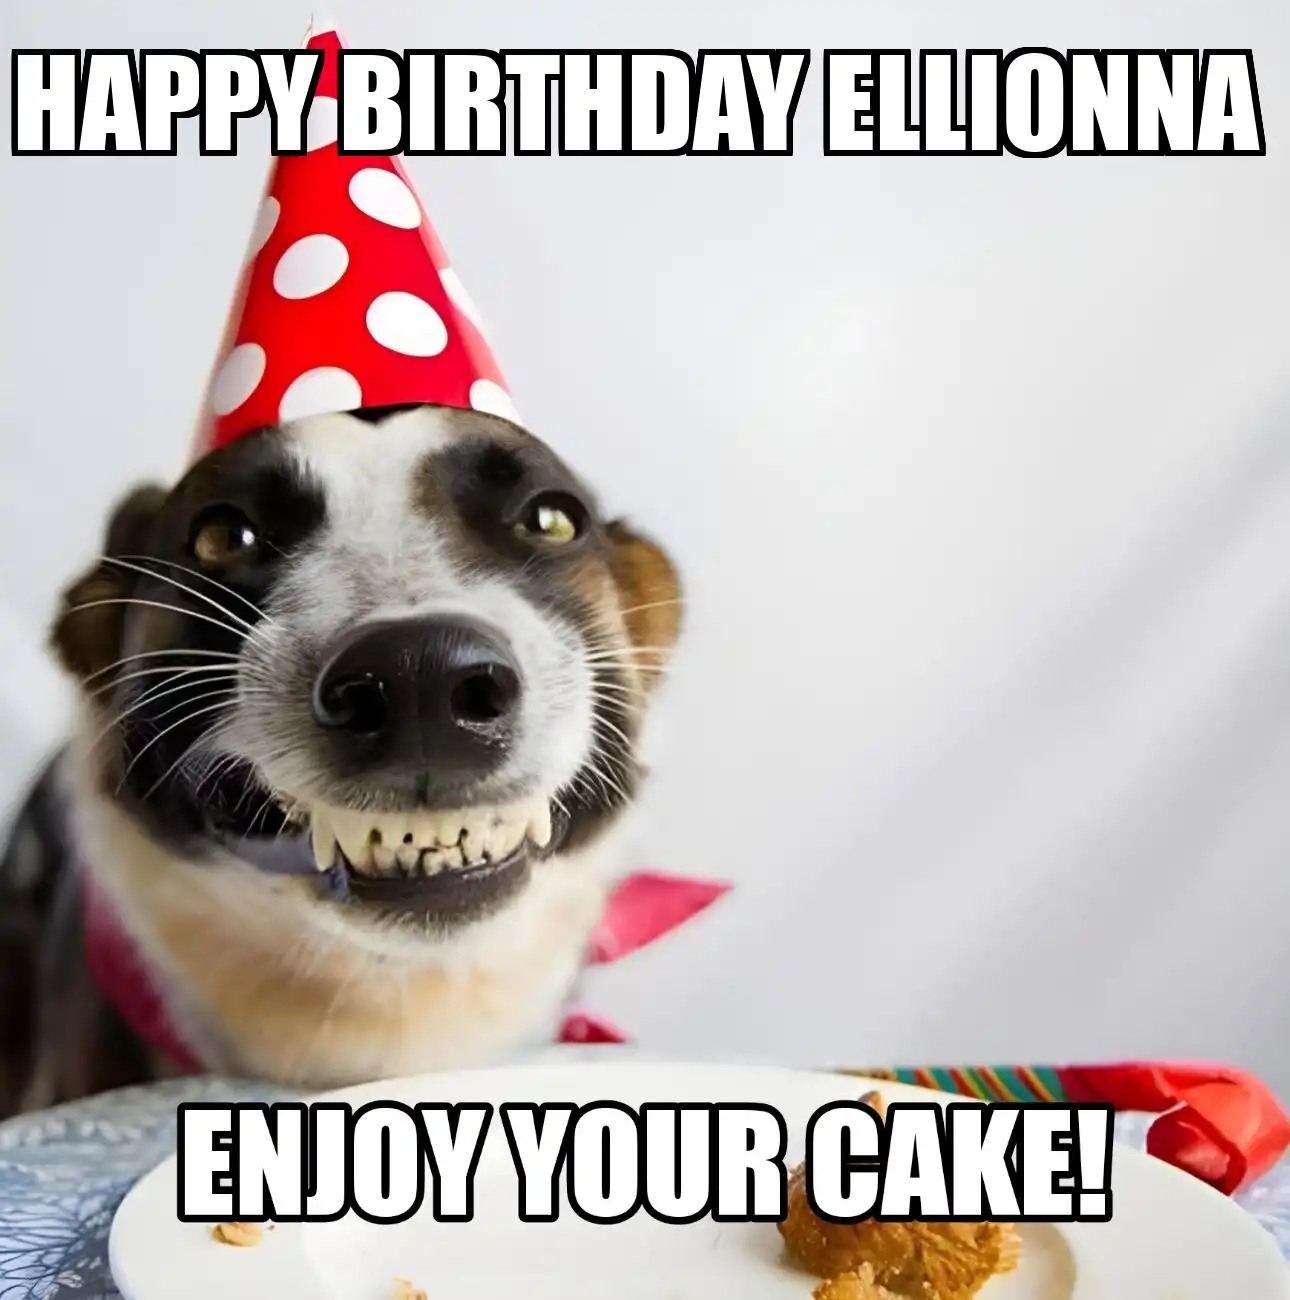 Happy Birthday Ellionna Enjoy Your Cake Dog Meme